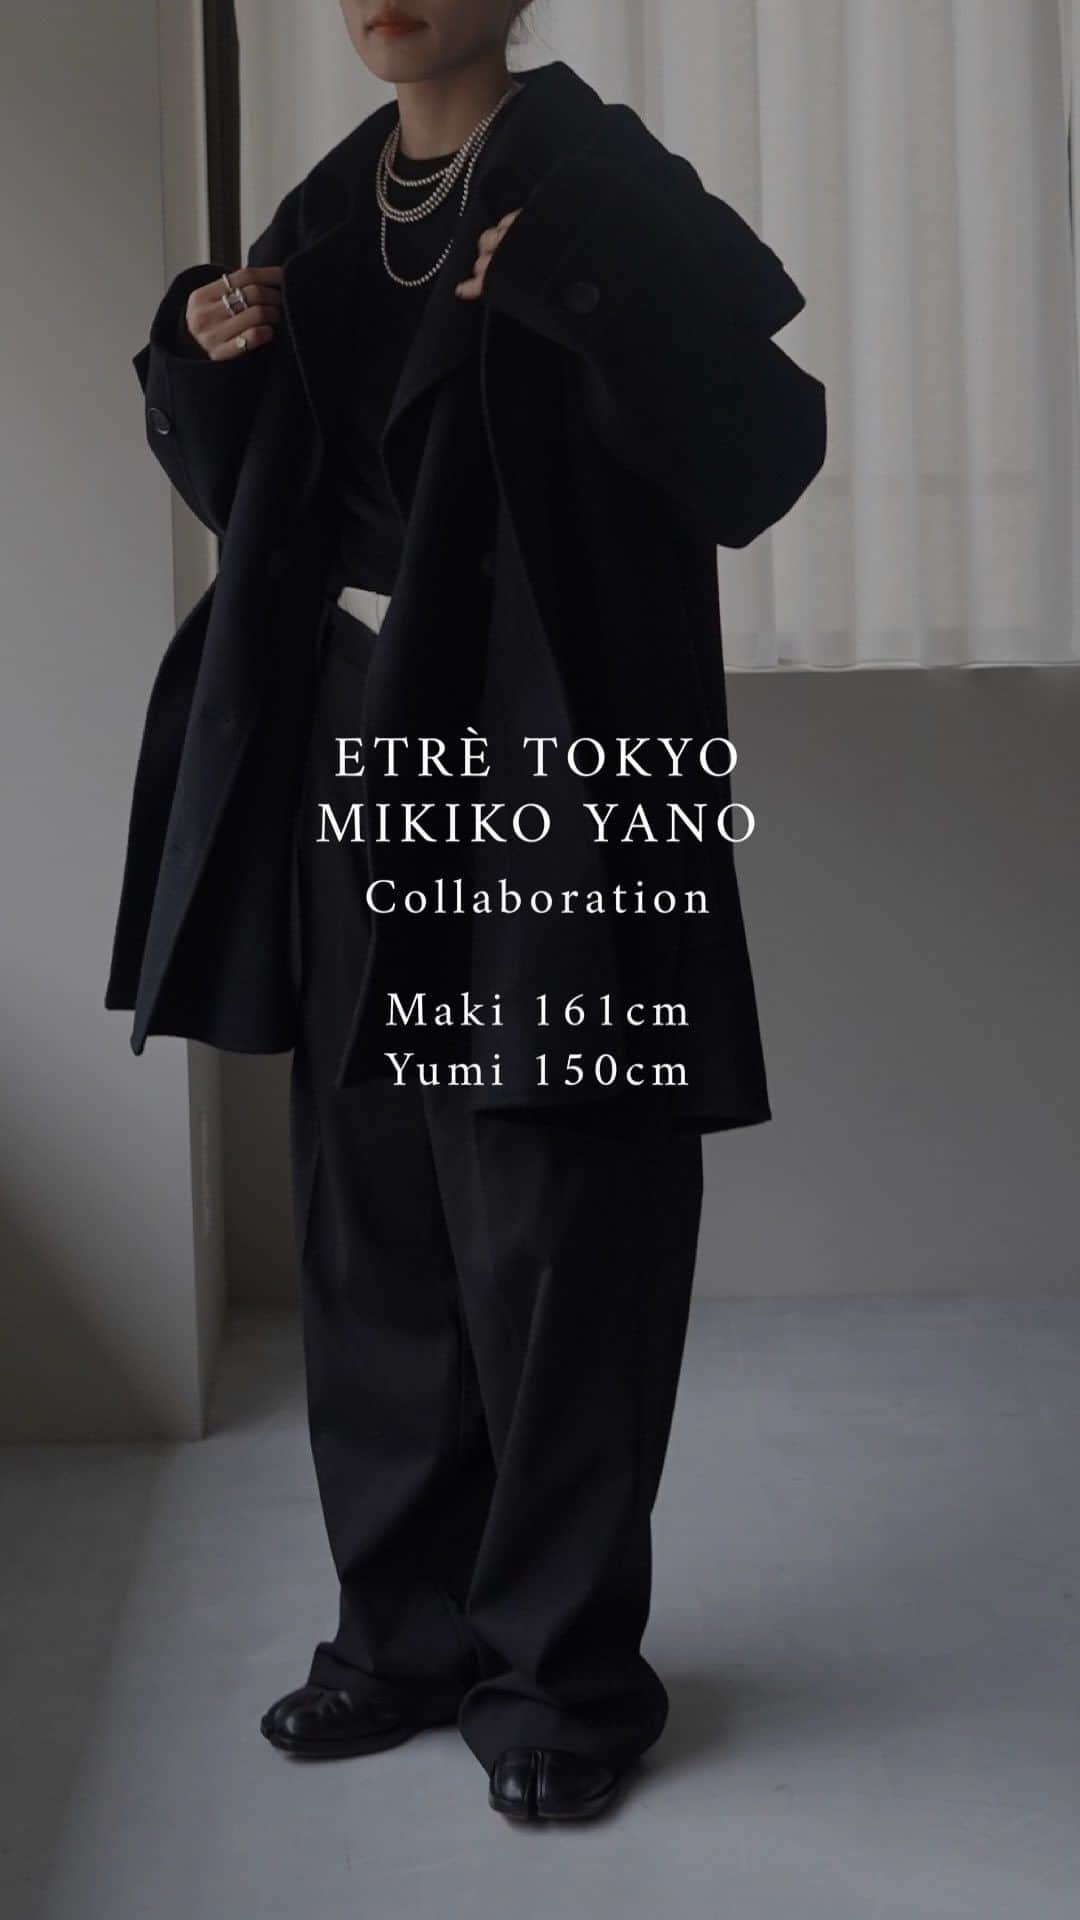 ETRÉ TOKYO ストアのインスタグラム：「【ETRE TOKYO x MIKIKO YANO Collaboration】 @mikko1104  ㅤㅤㅤ  ㅤㅤㅤ✔︎︎︎︎Staff Styling  Maki 161cm @etretokyo_maki  Yumi 150cm @etretokyo_yumi  ㅤㅤㅤ ㅤㅤㅤ  #ETREフーディリバートレンチコート BEIGE / BLACK S.M size ¥59,400(tax in) ㅤㅤ  #ETREジレセットロングワンピース WHITE / BLACK ¥49,500(tax in) ㅤㅤㅤ ㅤ #ETREWフェイスハーフジップニットプルオーバー GREY / BLACK ¥28,600(tax in) ㅤㅤㅤ ㅤㅤ #ETREカービングニットパンツ GREY / BLACK ¥30,800(tax in)  ㅤㅤㅤ  ㅤㅤㅤ┈┈┈┈┈┈┈┈┈┈┈┈┈┈┈┈┈┈┈ ㅤㅤㅤ ㅤㅤ  【INFORMATION】 ⁡ㅤㅤㅤ ⁡ ※11/23(木)発売のアイテムは、11/24(金)12:00よりお在庫のある場合、ルミネカード会員様限定で店舗通販のご利用が可能です。  ⁡ ※お電話がつながりにくい可能性がございます。 ⁡ ※また混雑時には入場制限及び 試着点数の制限を設けさせて頂きます。 予めご了承ください。 ⁡ ⁡ ご理解、ご協力を賜りますよう 心よりお願い申し上げます。   ㅤㅤㅤ 【LUMINE SHINJUKU STORE】 ETRÉ TOKYO ルミネ新宿2店 TEL：03-5989-0979  ー営業時間ー (平日、土日祝)11:00-21:00 ⁡  #etretokyo#etre#fashion#etretokyoshinjuku #etre#2023etre#etretokyo_staff_ootd#2023aw #大人ファッションコーデ #シンプルスタイル  #オトナカジュアルコーデ #ショートコート #セットアップコーデ #ニットパンツ」